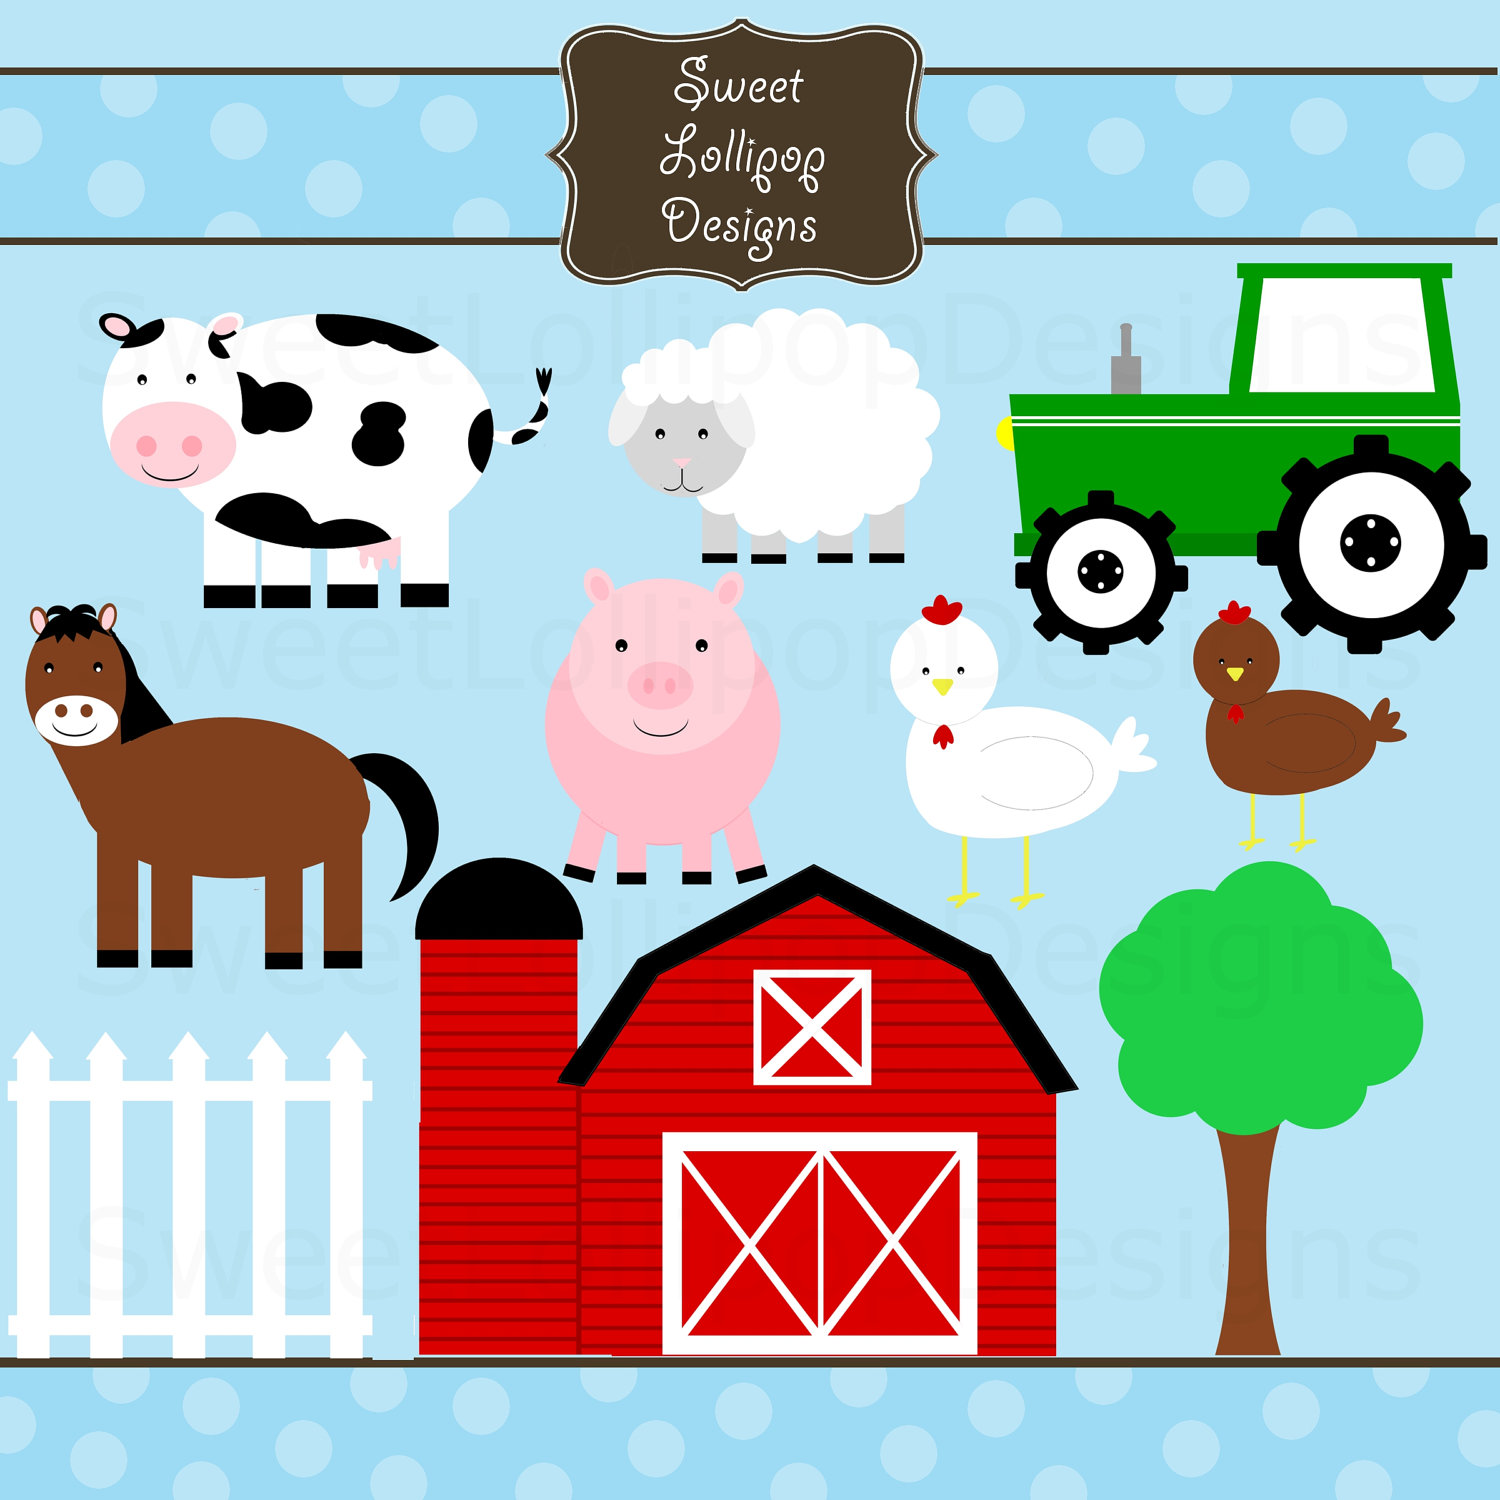 farm clipart - Free Farm Clipart